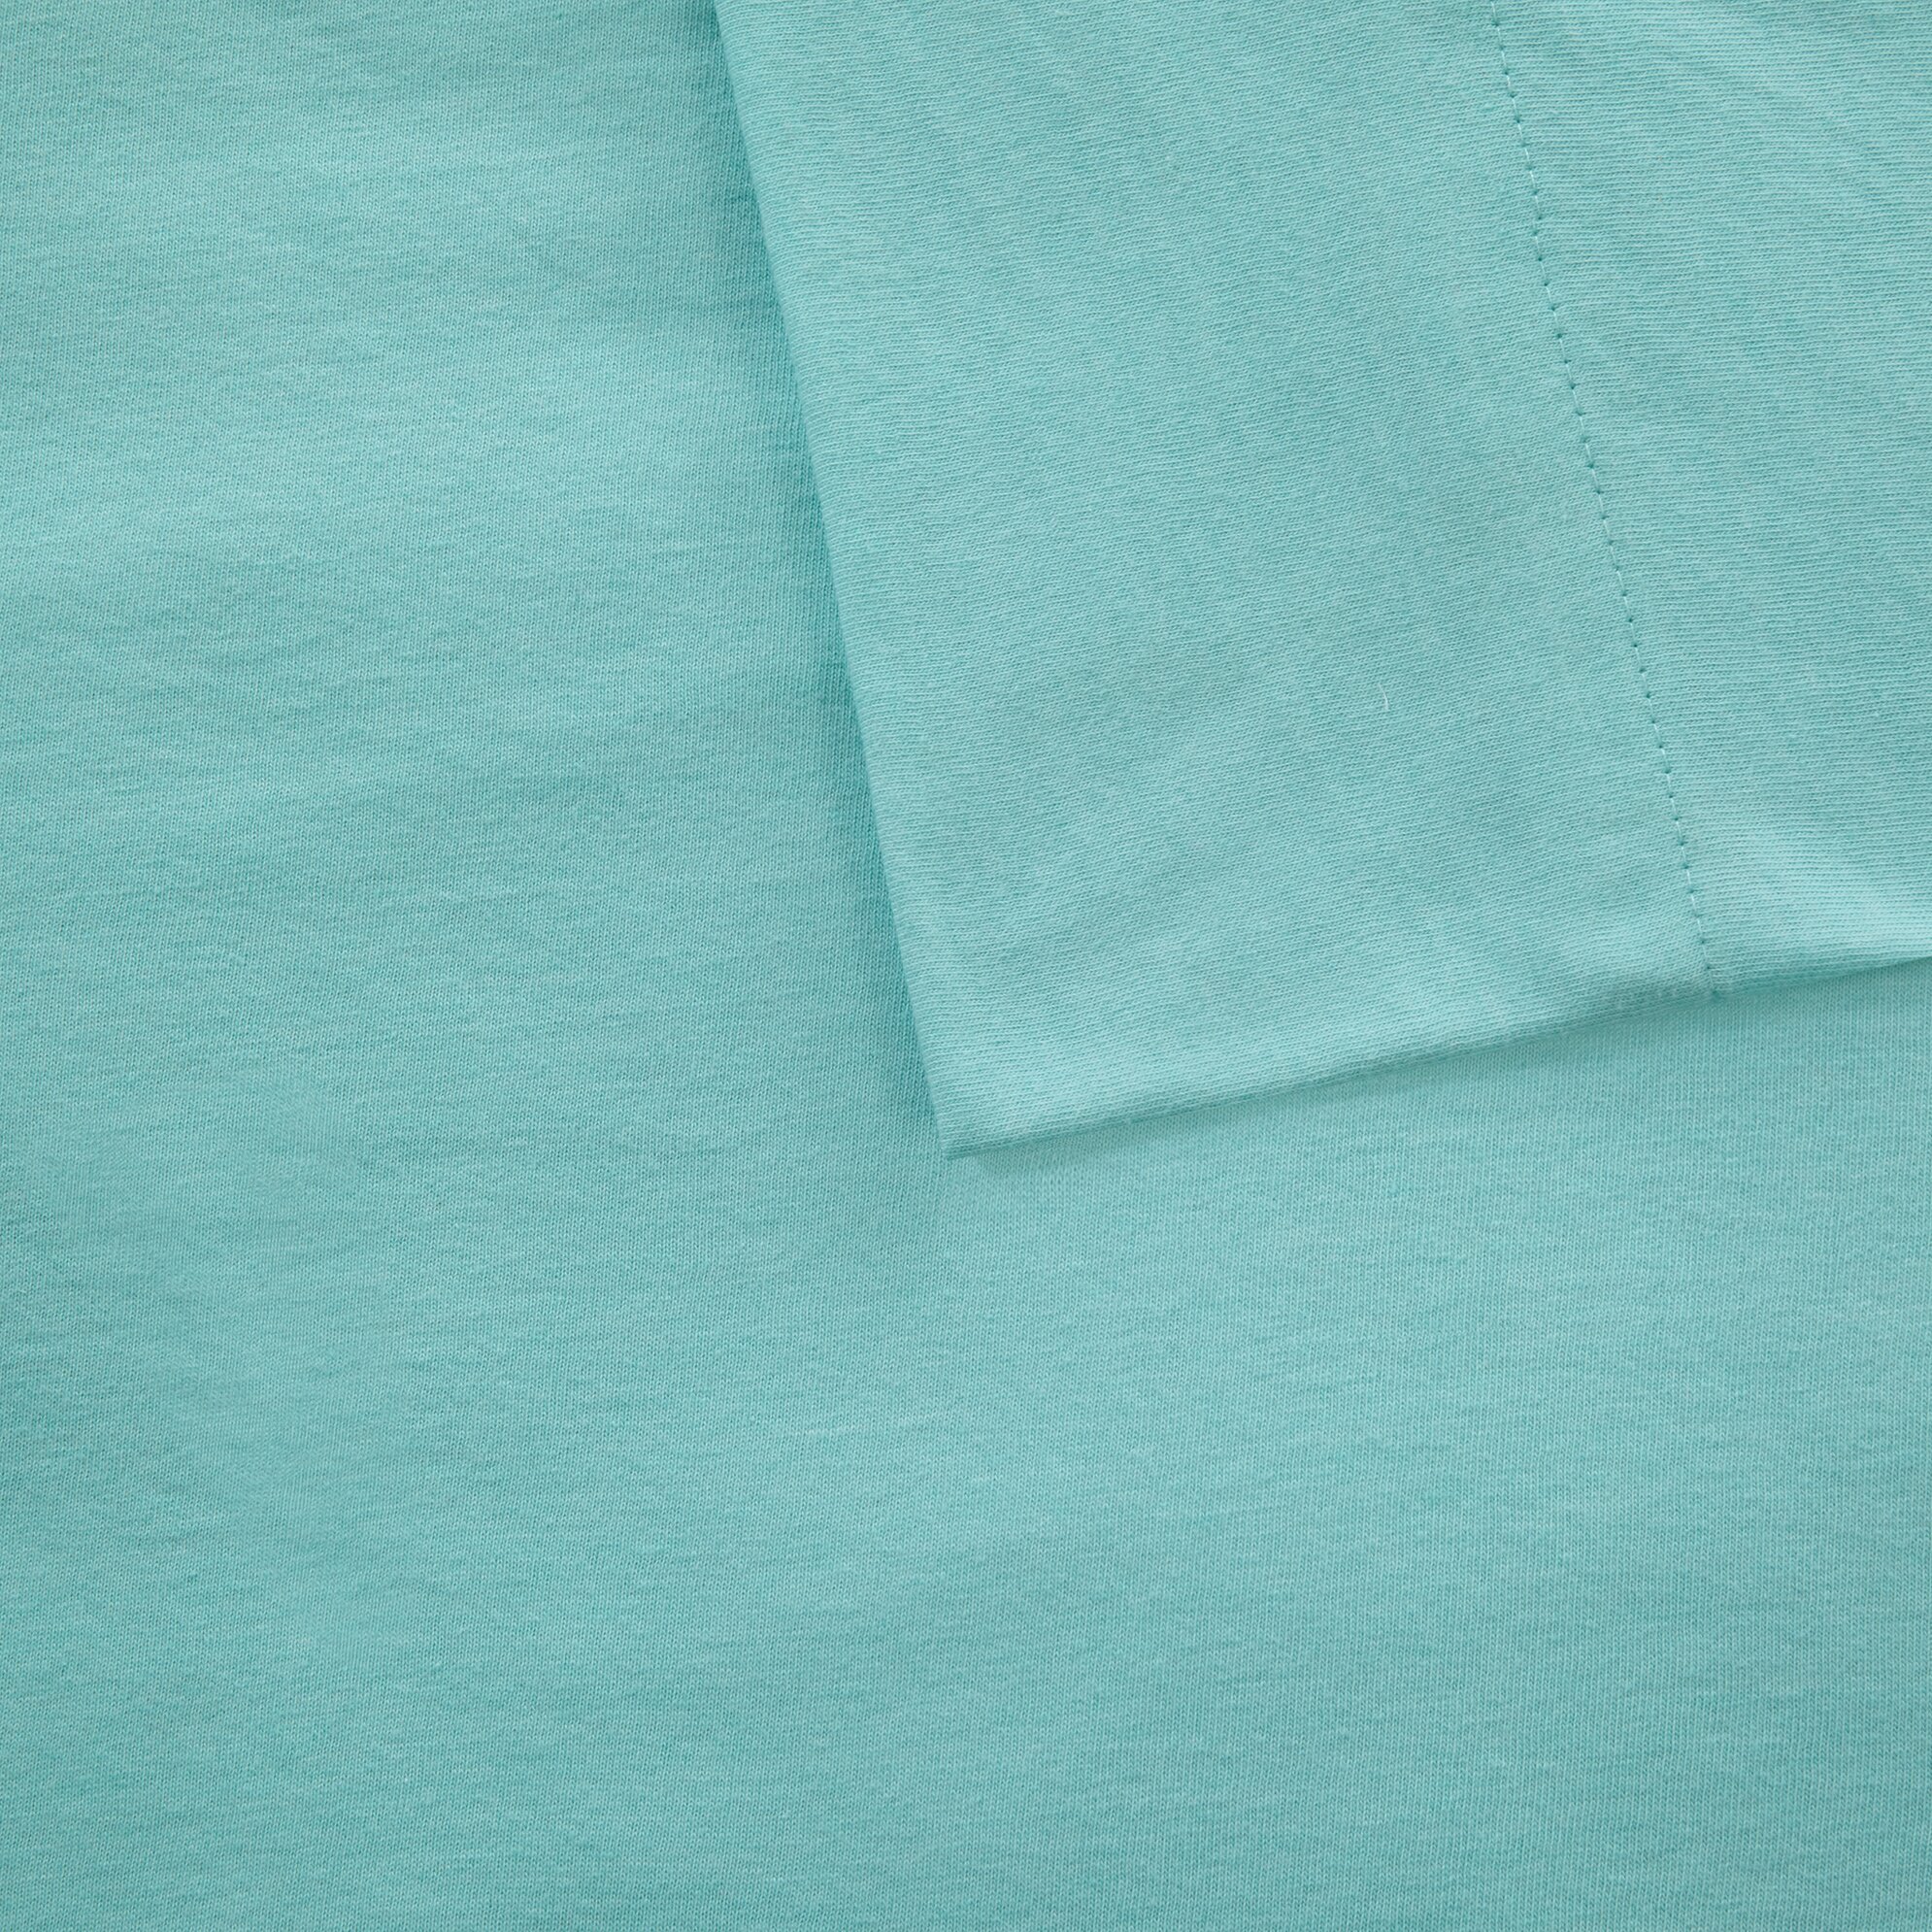 Intelligent Design Jersey Knit Sheet Set & Reviews | Wayfair